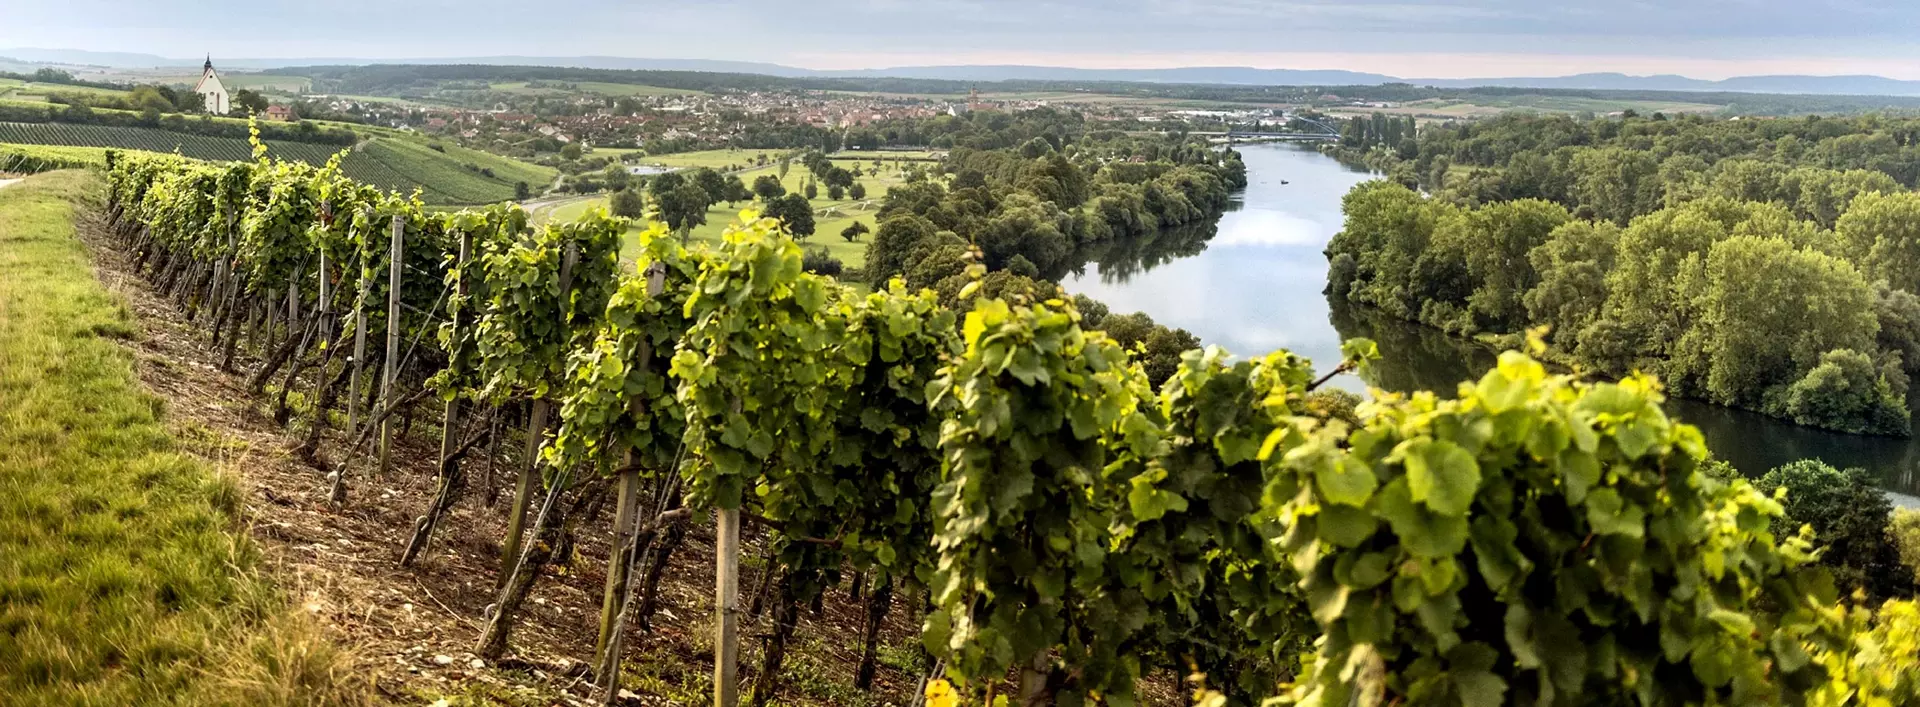 im Urlaub auf dem Weingut im Fränkischen Weinland eine Weinbergführung machen